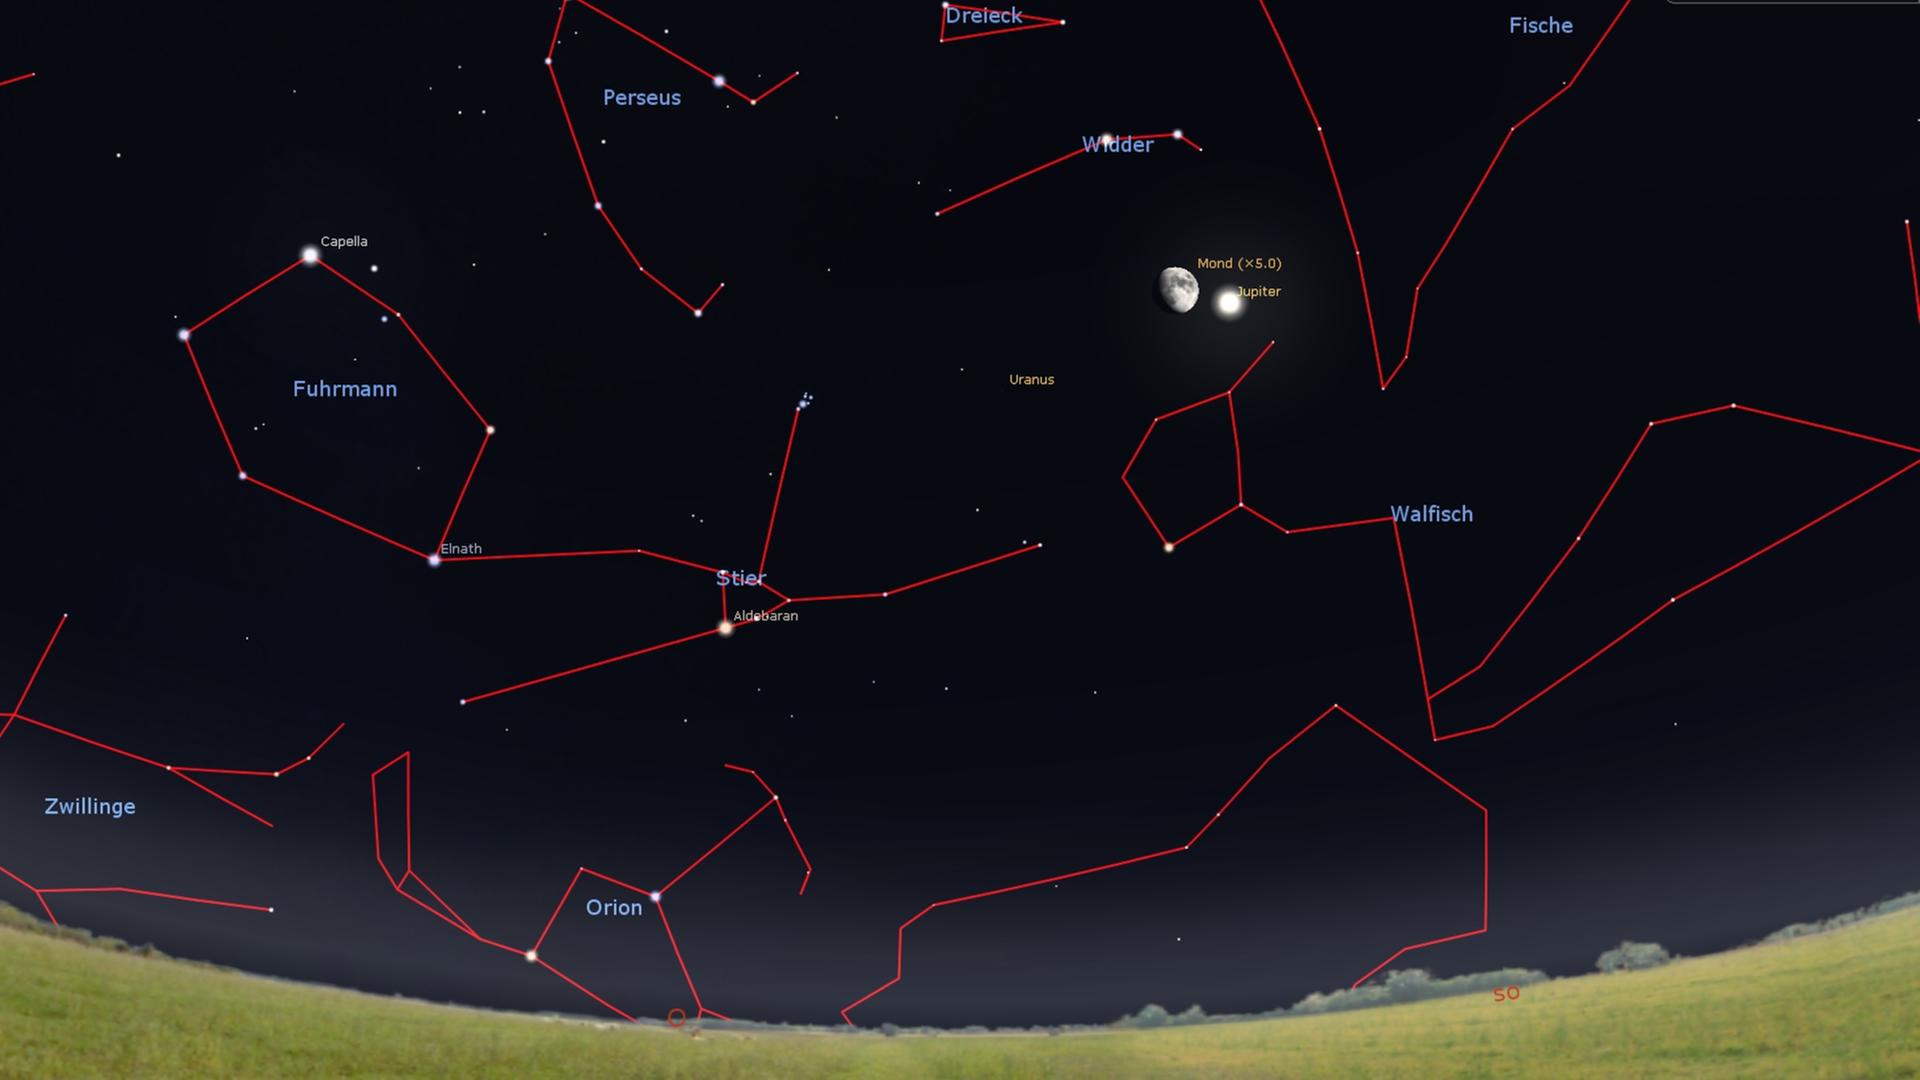 Sternenbilder am Himmel - sichtbar gemacht durch rote Linien